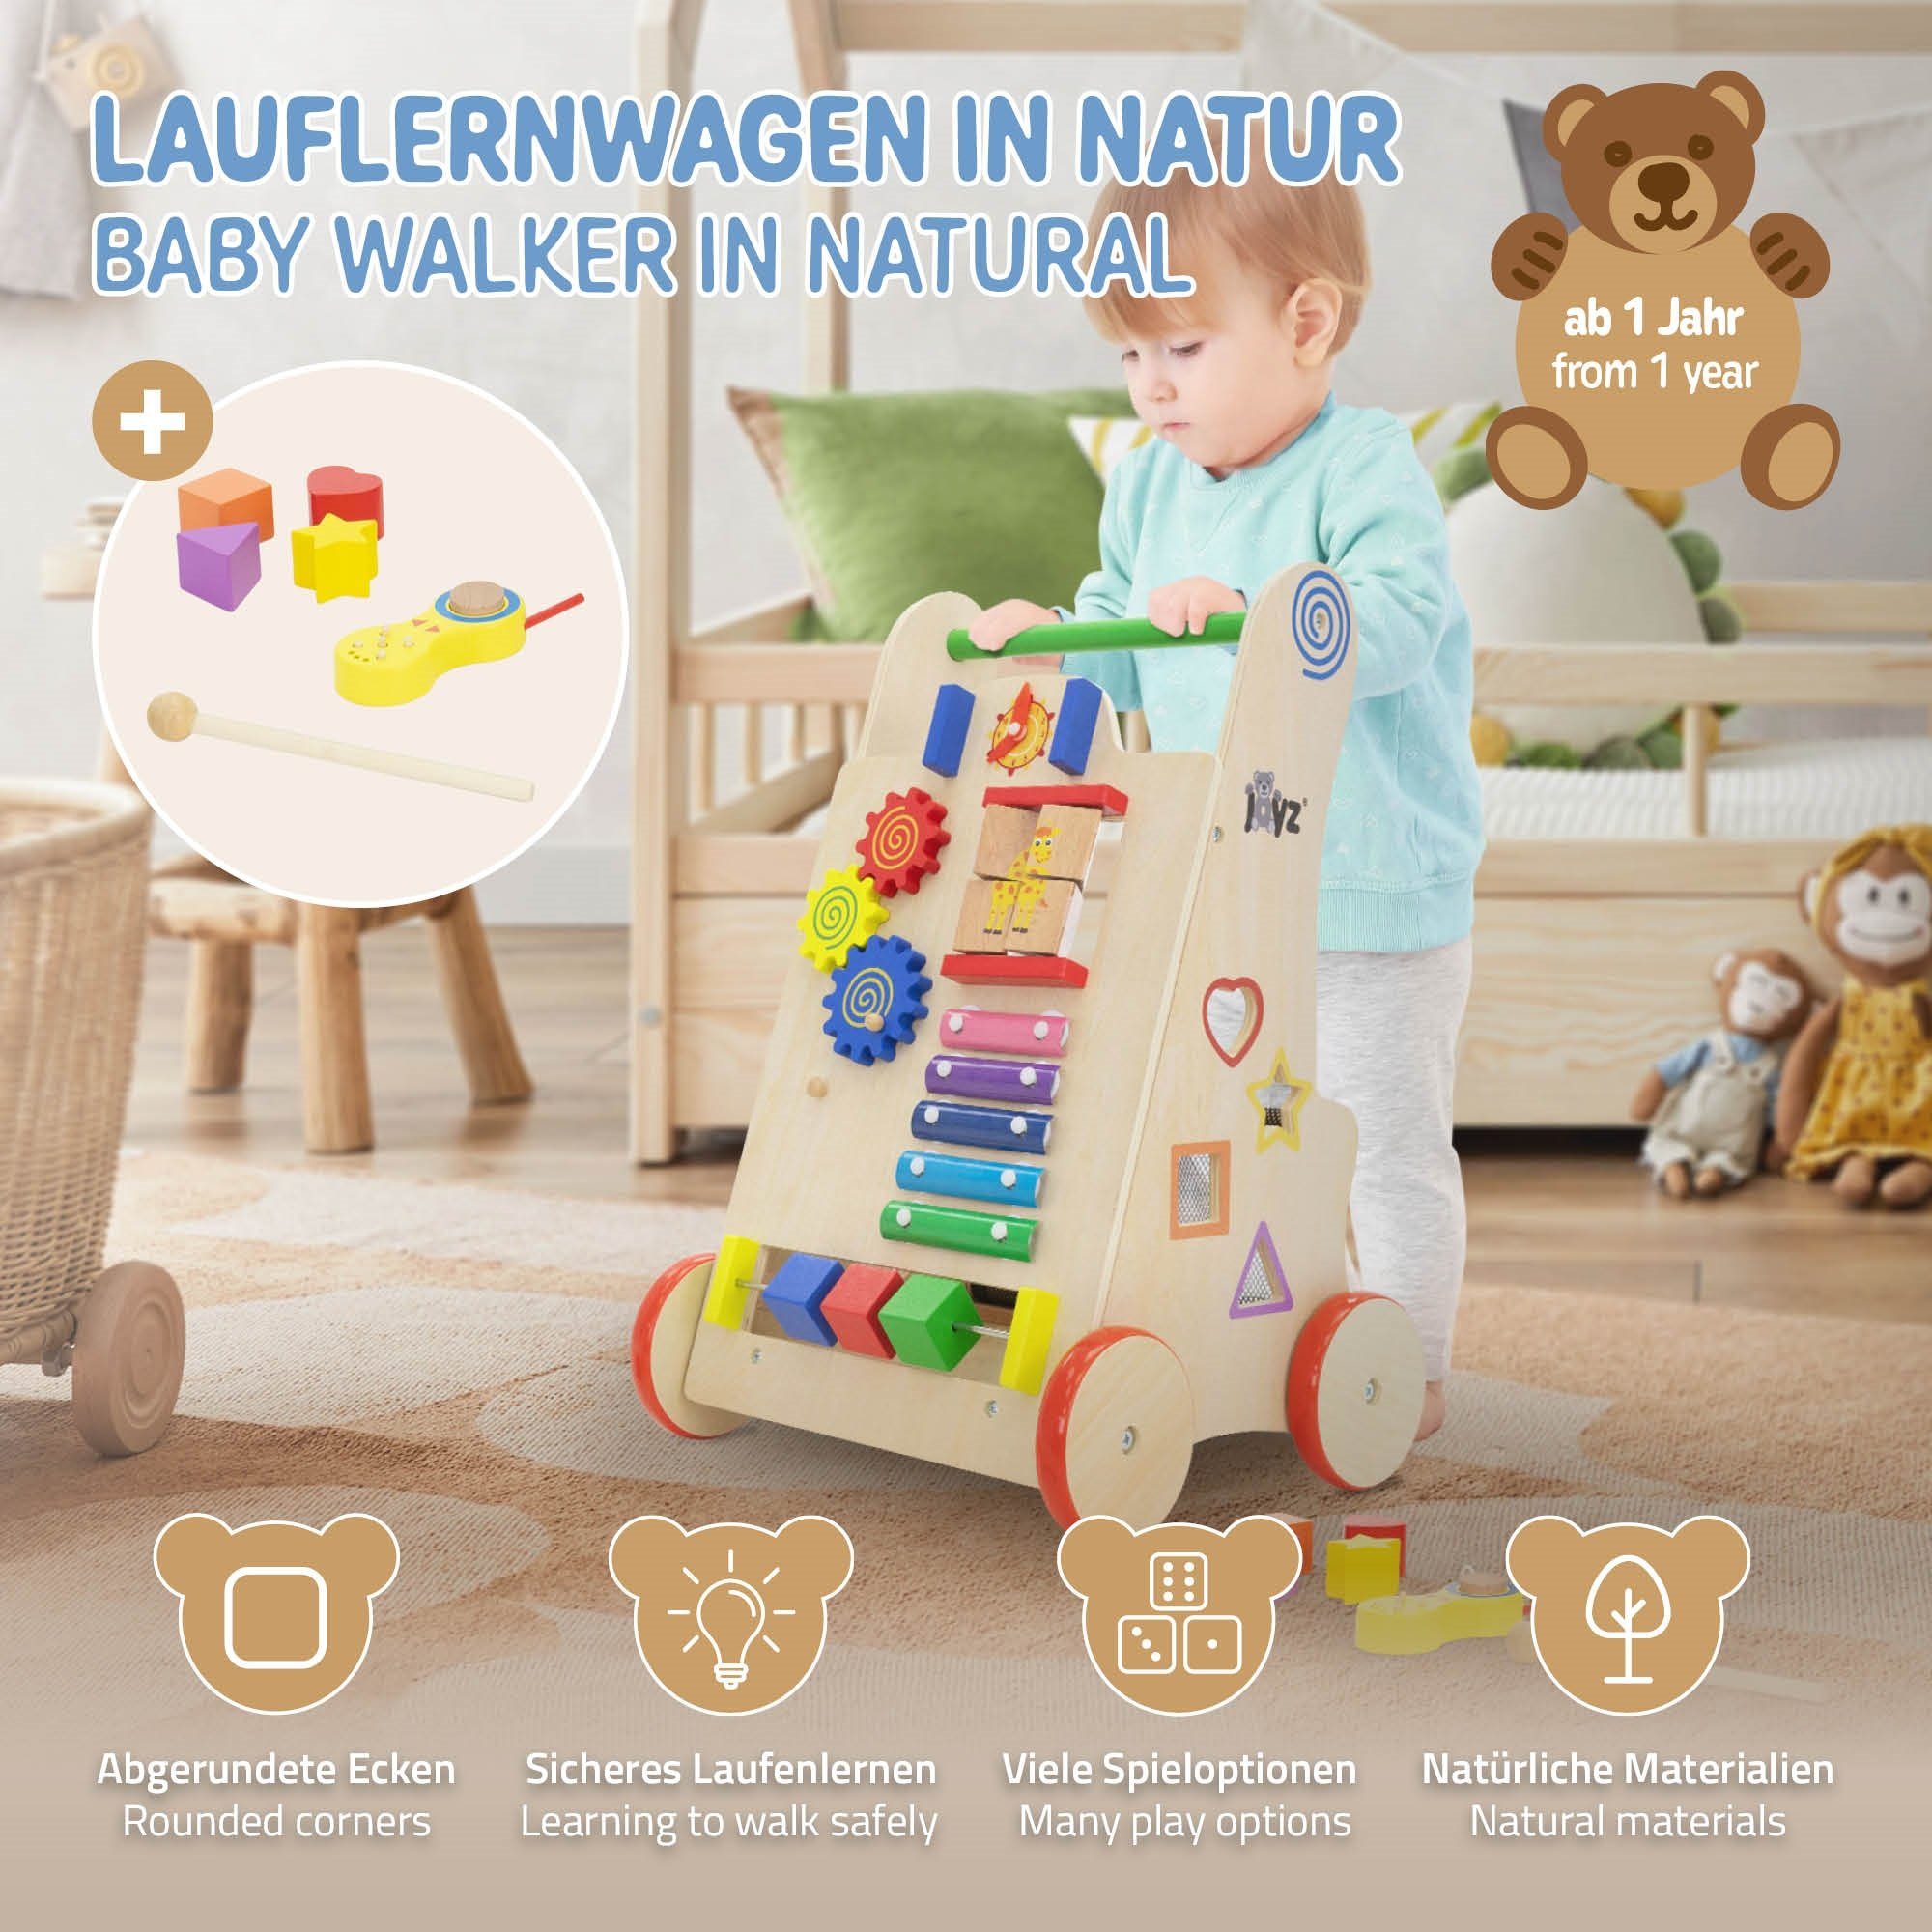 Joyz ab Gehhilfe Multifunktional Baby Gummibereifung, für Jahr Kinder Natur 1 Holz Spiel-Laufwagen, Lauflernhilfe Lauflernwagen mit mit Walker Aktivitäten 6